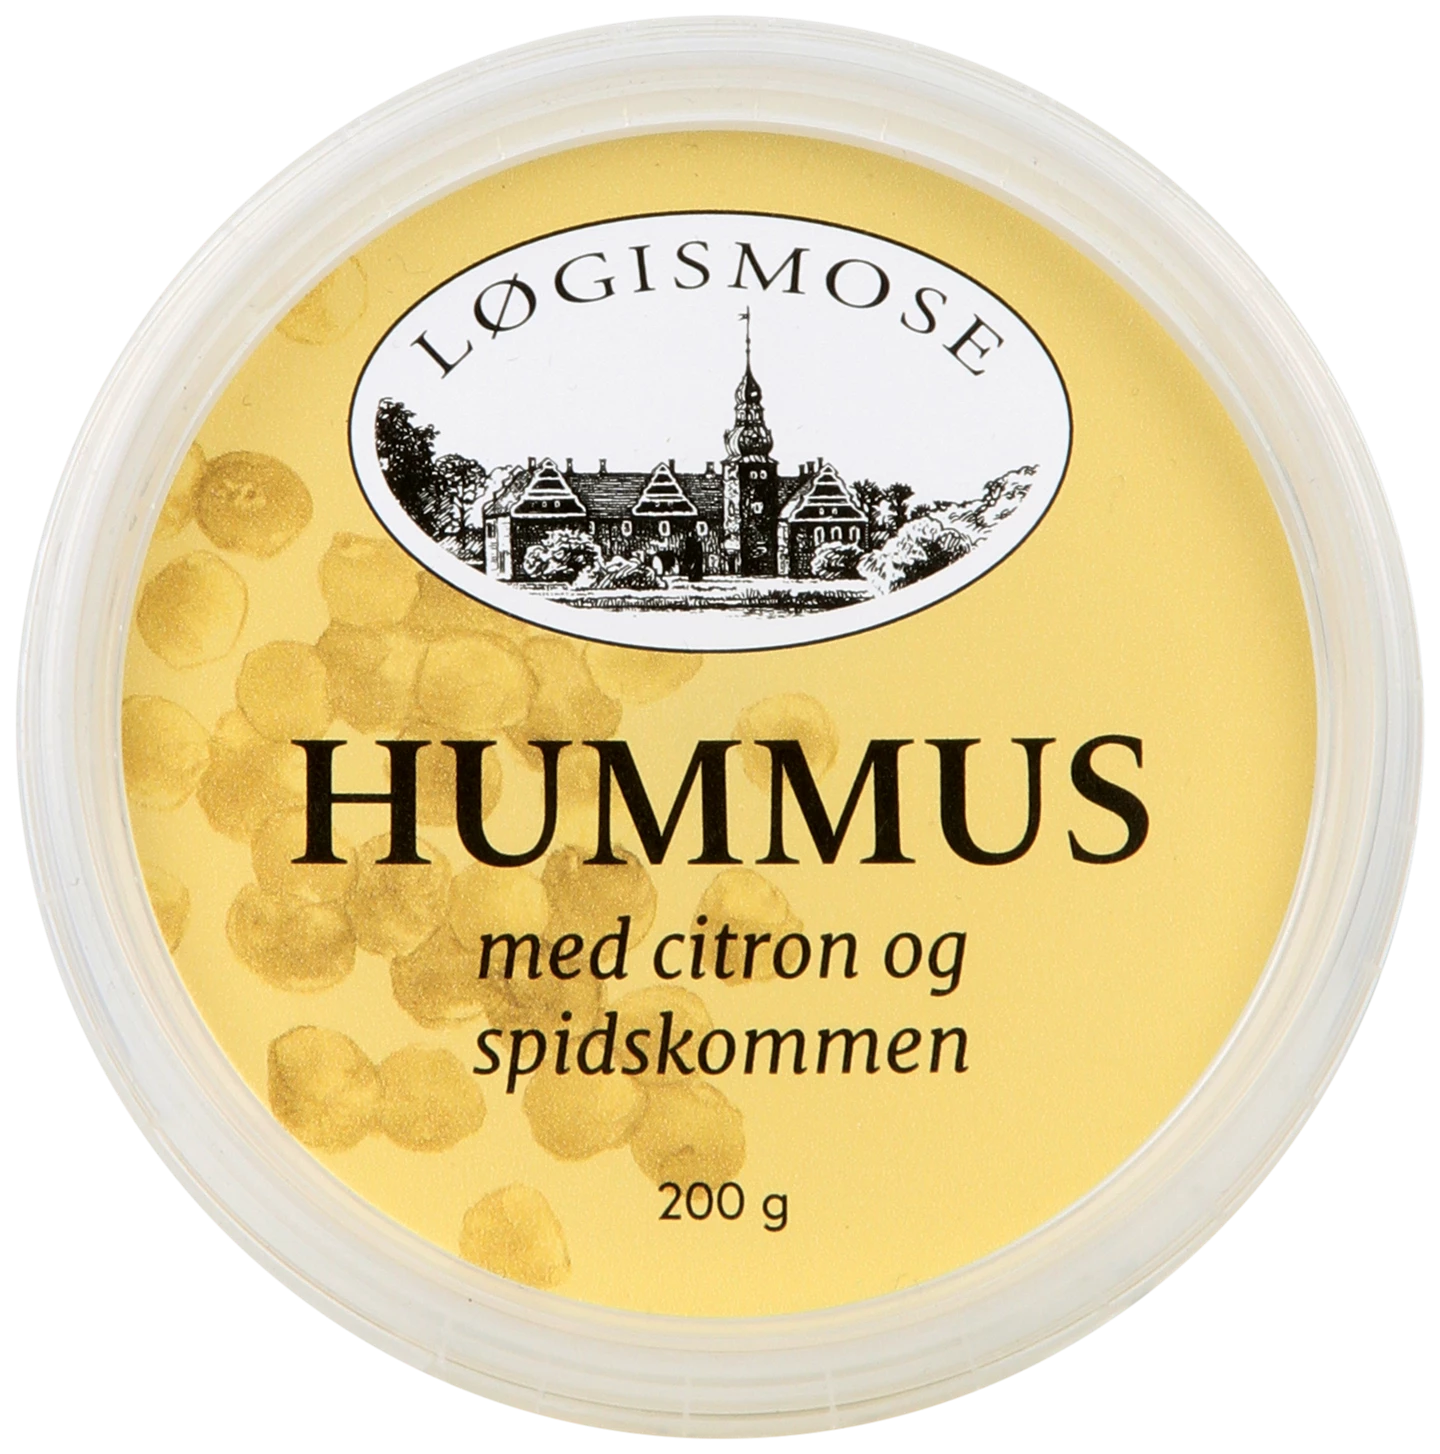 127142_hummus_med citron_og_spidskommen2